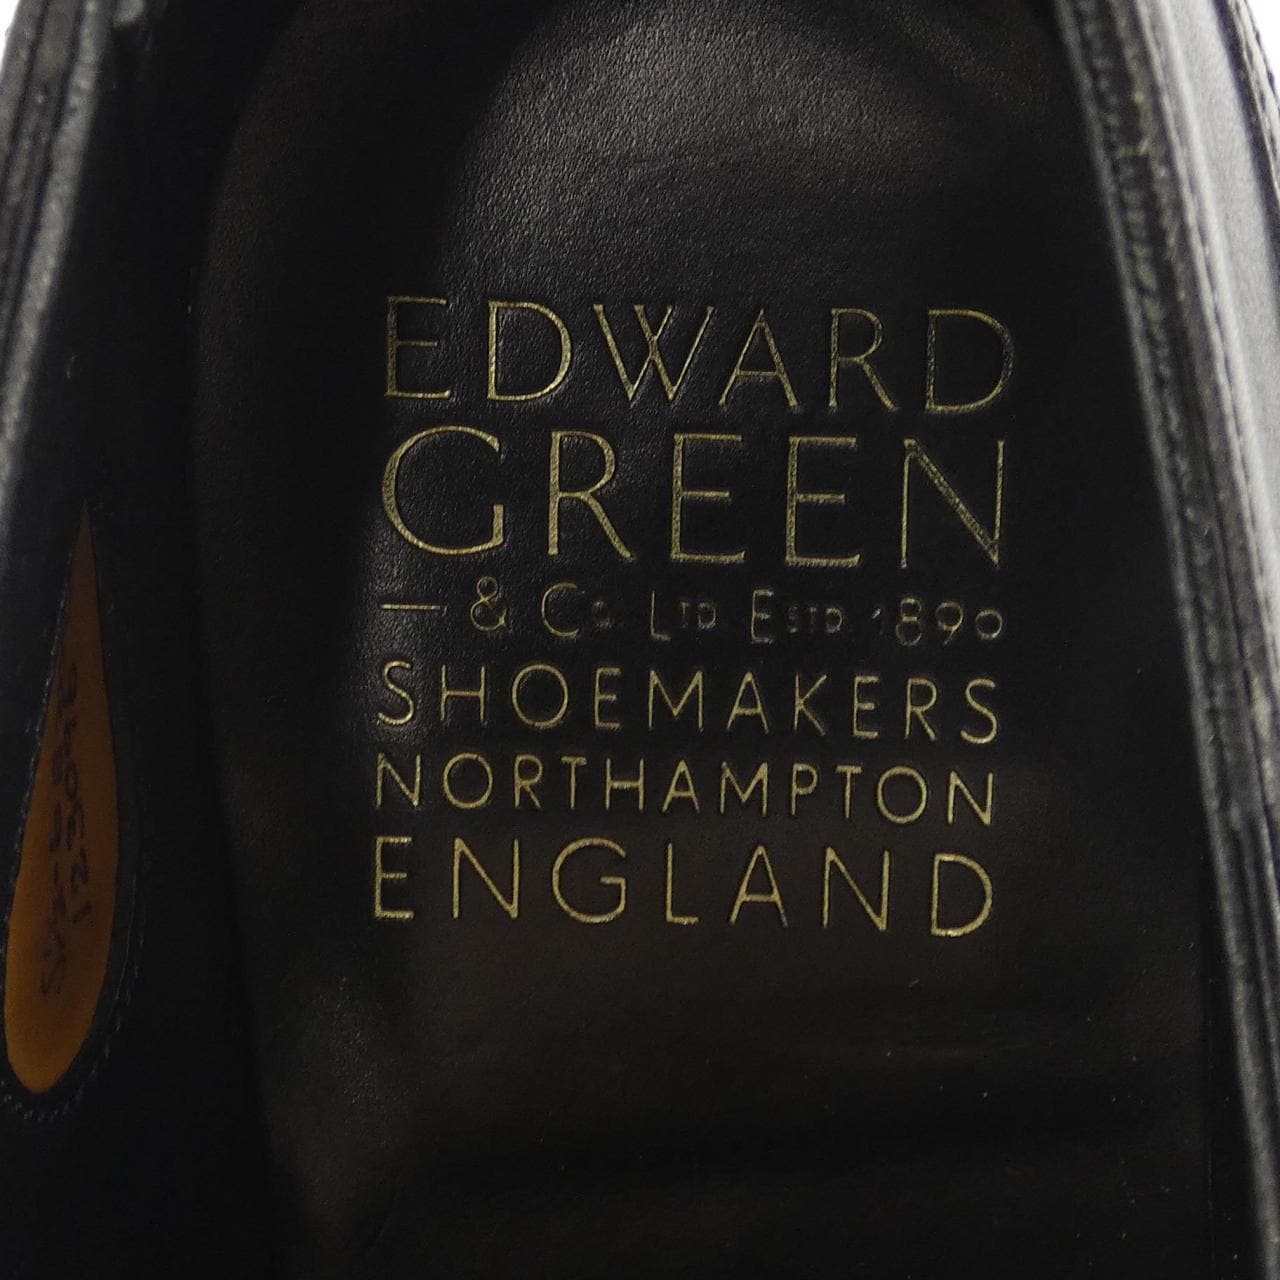 Edward green EDWARD GREEN shoes